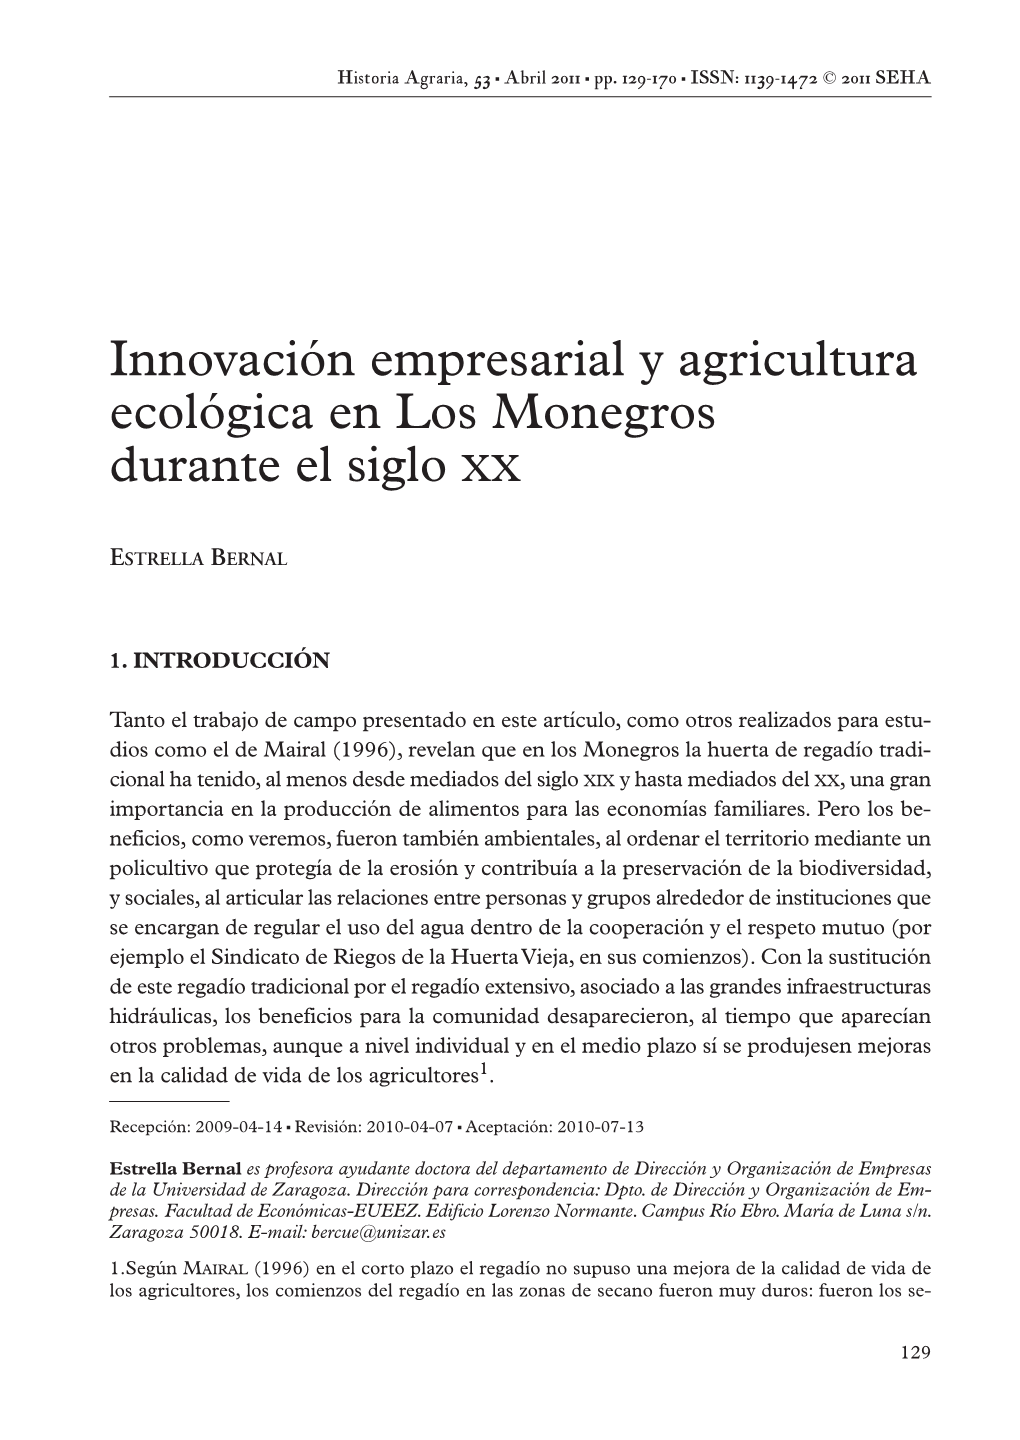 Innovación Empresarial Y Agricultura Ecológica En Los Monegros Durante El Siglo XX